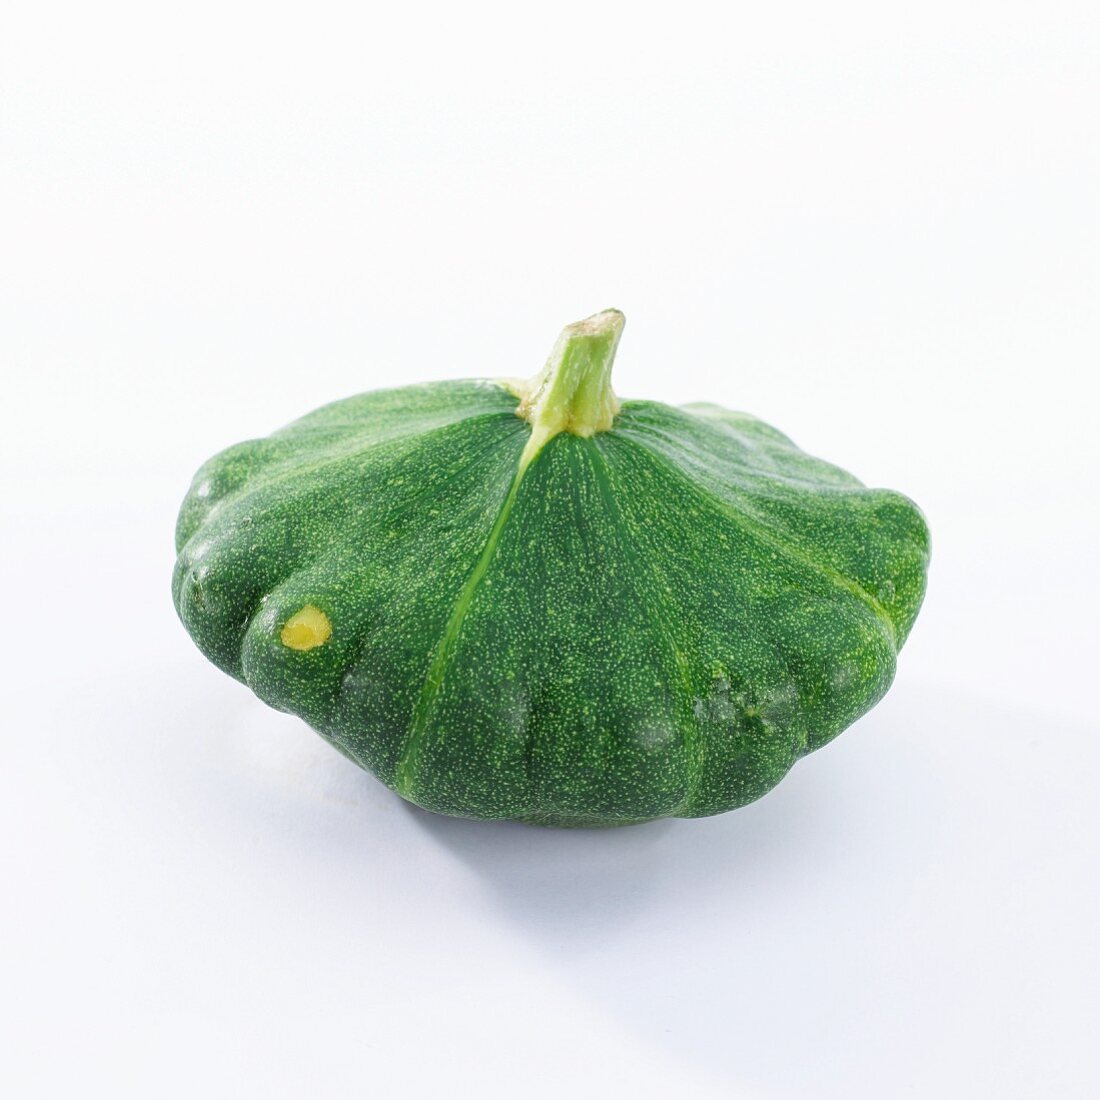 A green pattypan squash